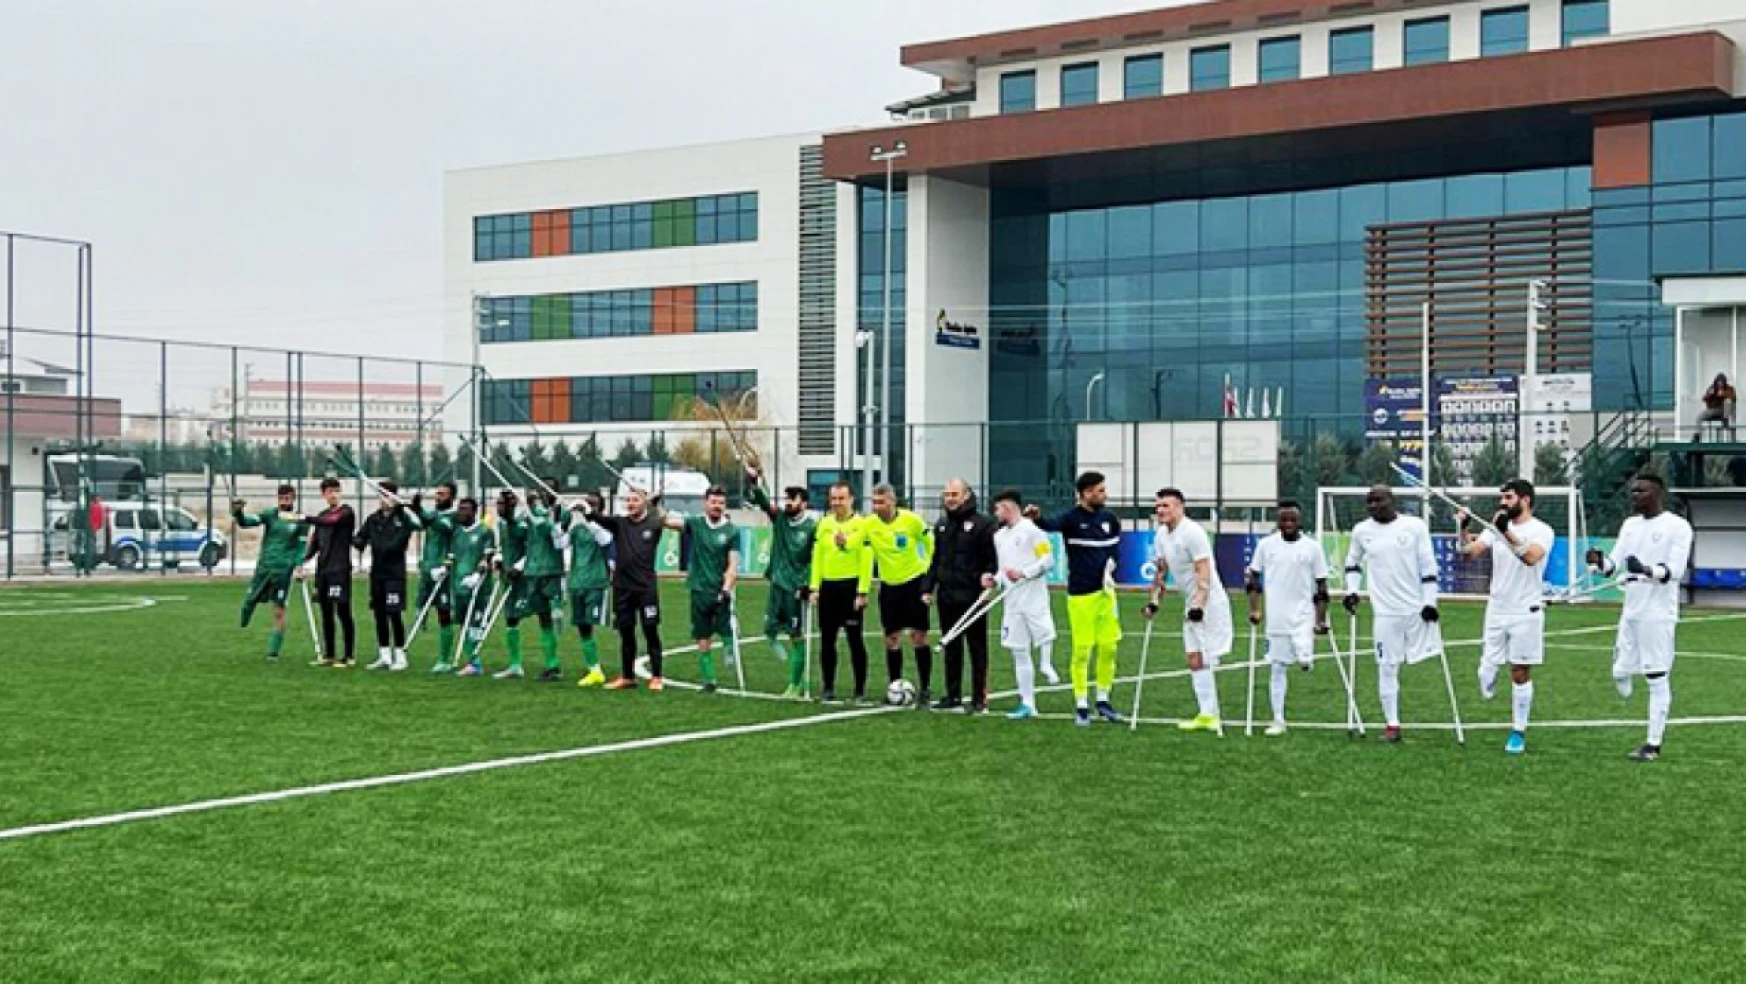 Konya Engelliler Gücü Spor Kulübü Ampute Futbol Takımı farkla kaybetti